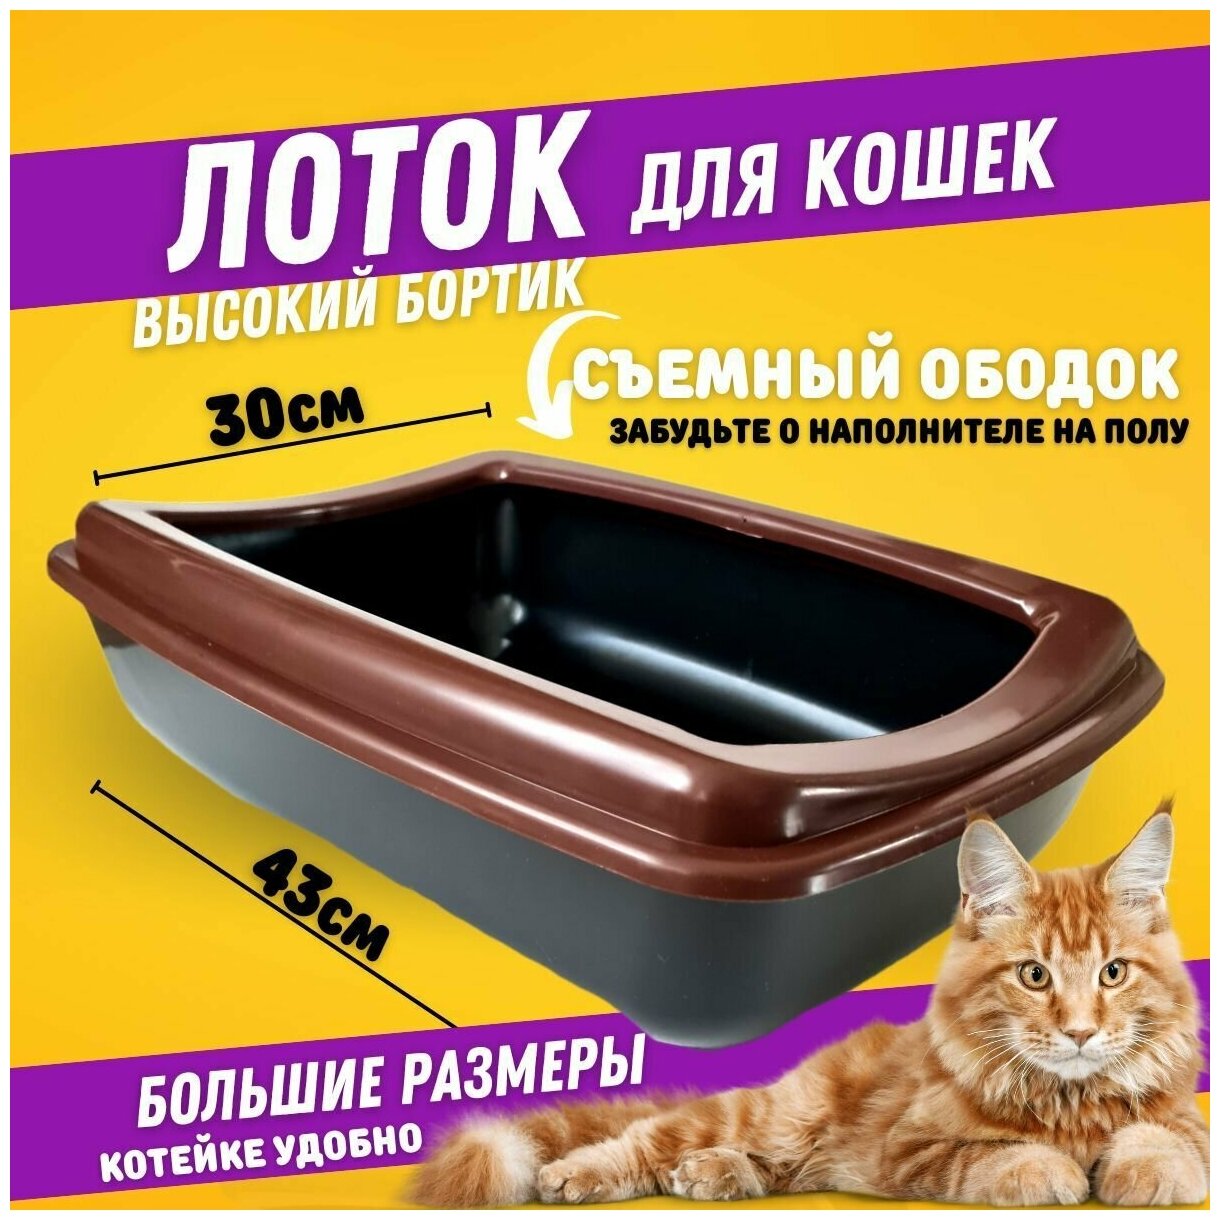 Лоток для кошек 43*30*12см /коричневый/Туалет для кошек со съемным ободком/ Кошачий туалет / для животных